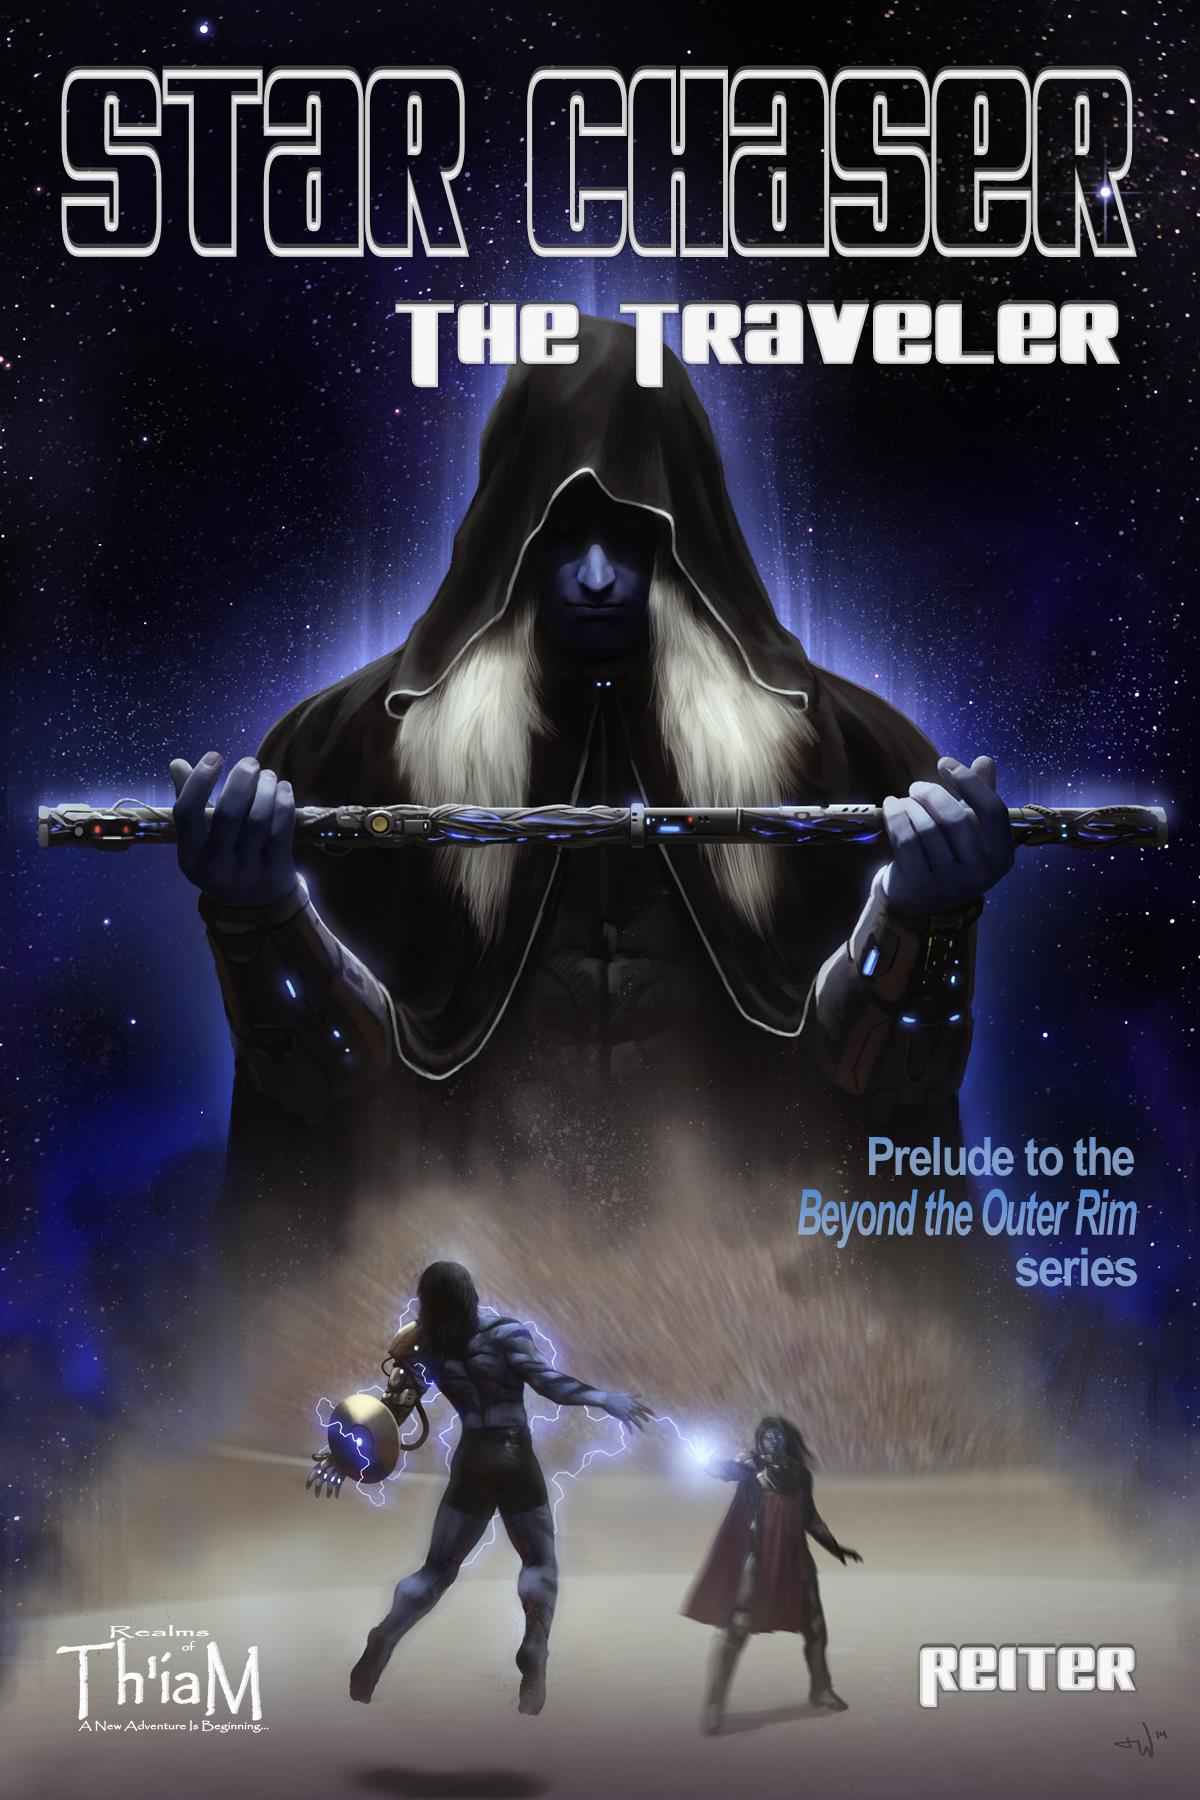 Star Chaser: The Traveler